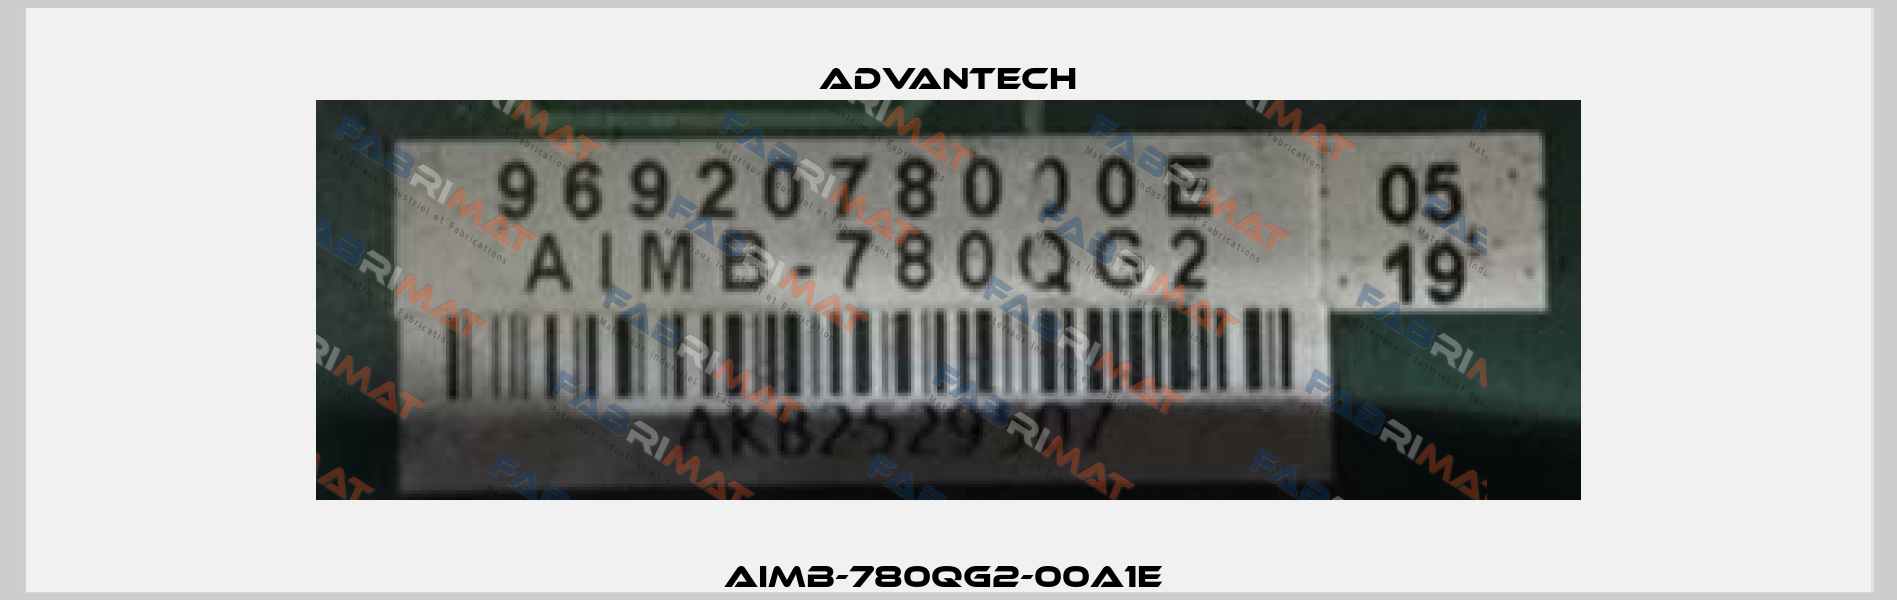 AIMB-780QG2-00A1E  Advantech